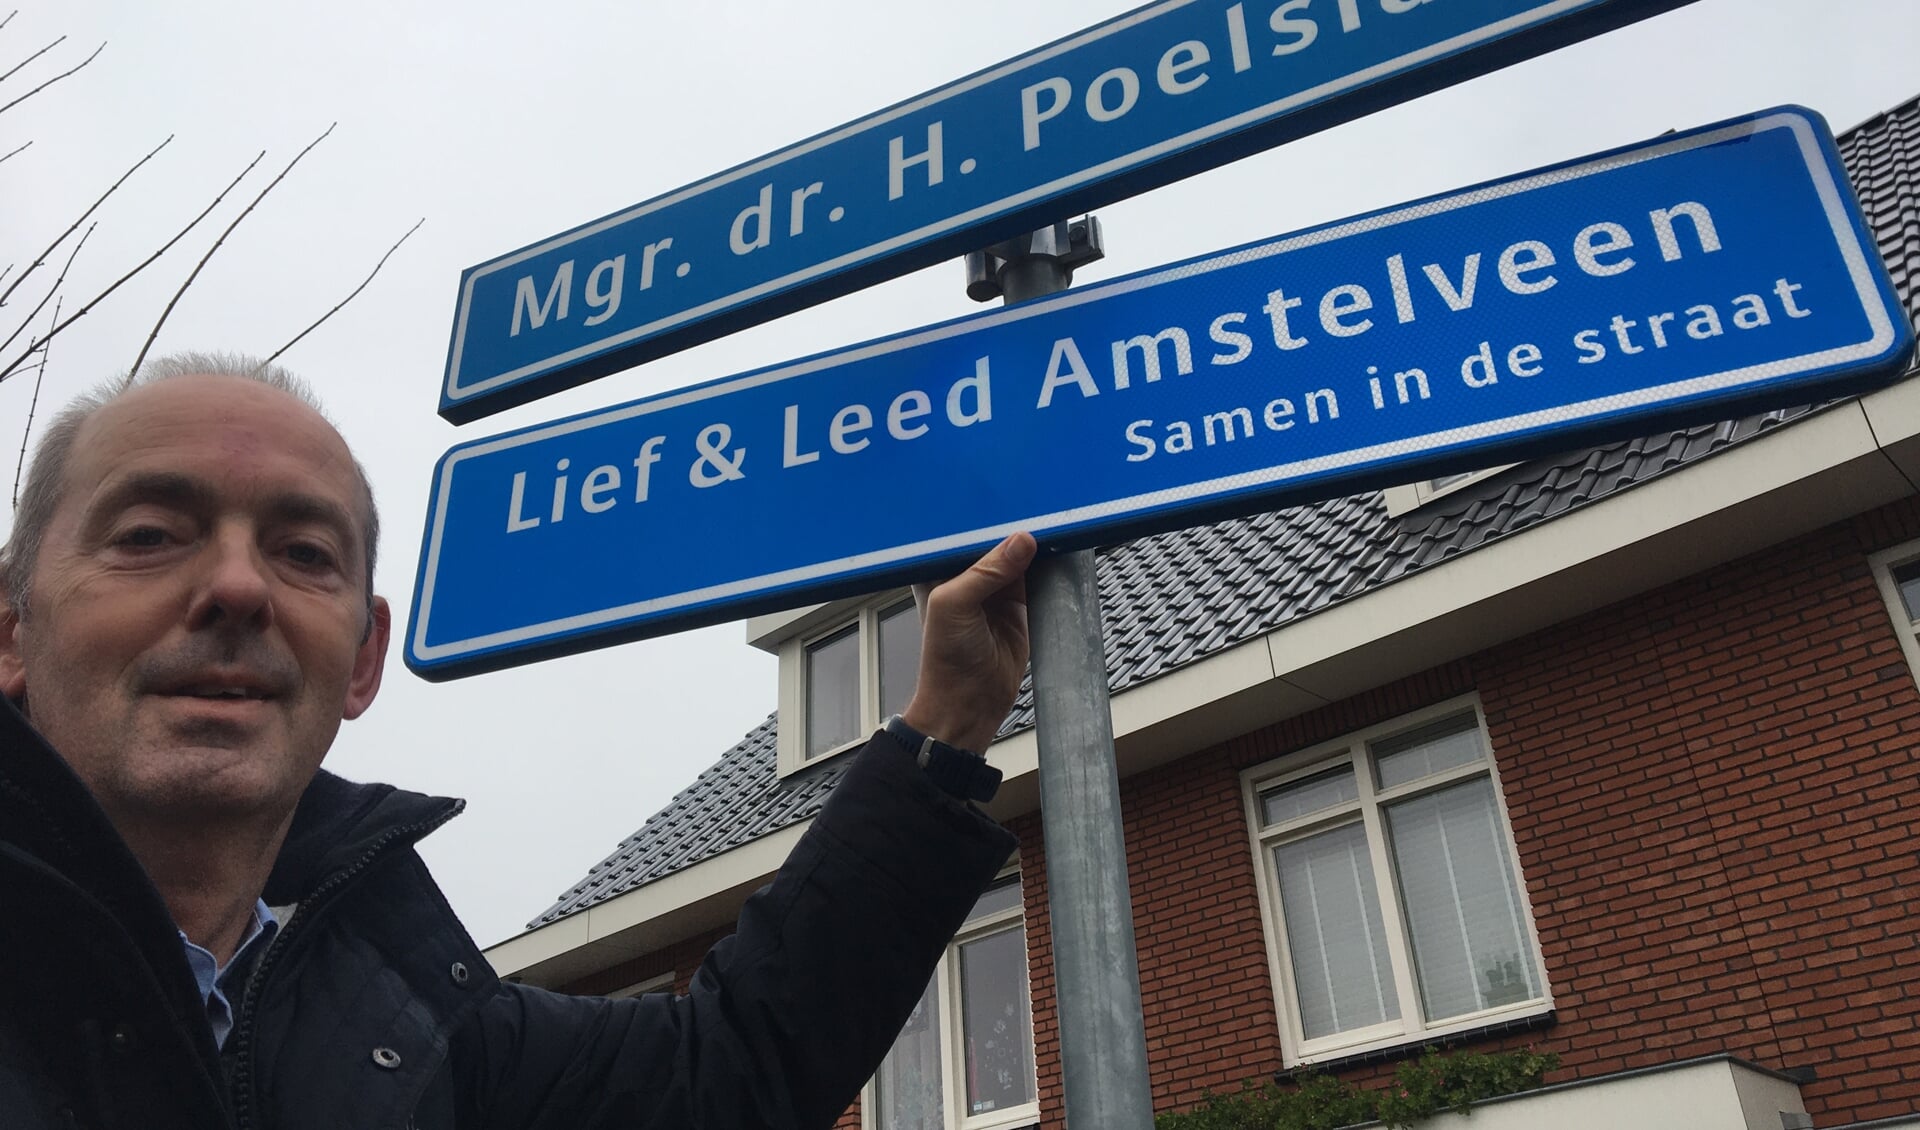 De Mgr. Dr. H. Poelslaan in Bovenkerk wast de eerste Lief & Leedstraten in Amstelveen. De gangmaker was Edwin Barentsen